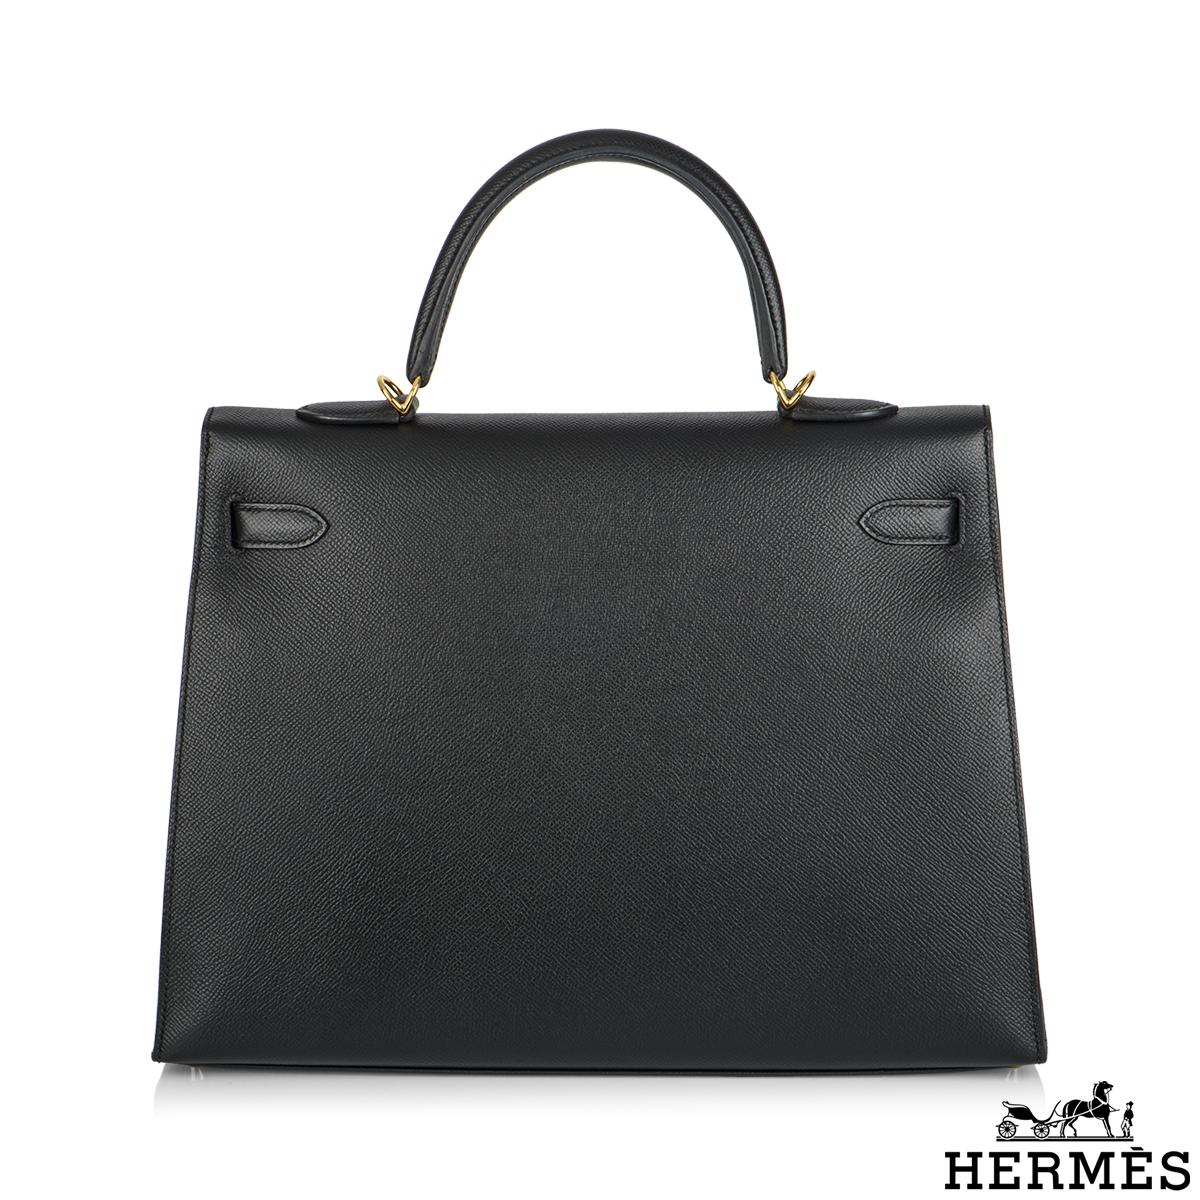 Femenino o masculino Hermès Pedido Especial Kelly Sellier 35cm Noir Veau Epsom GHW en venta